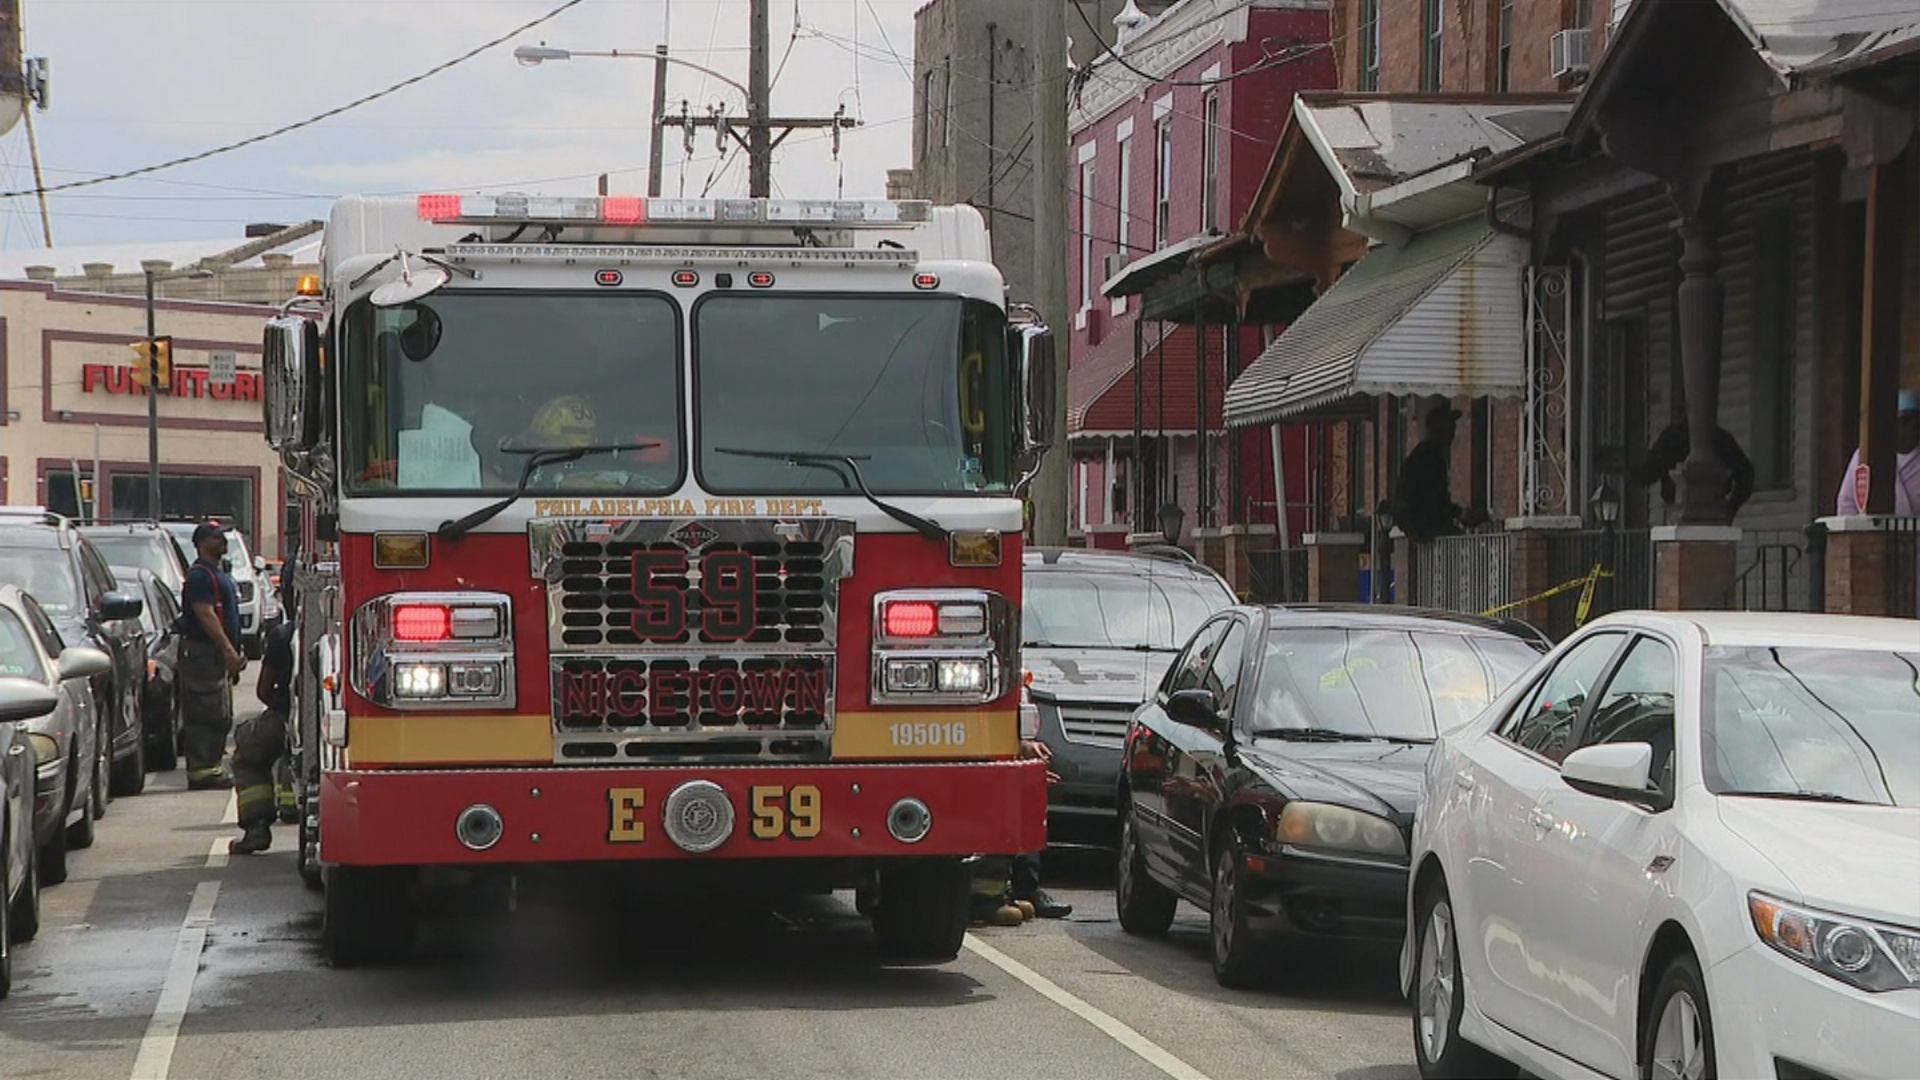 Philadelphia Firefighter Injured During Blaze In Nicetown